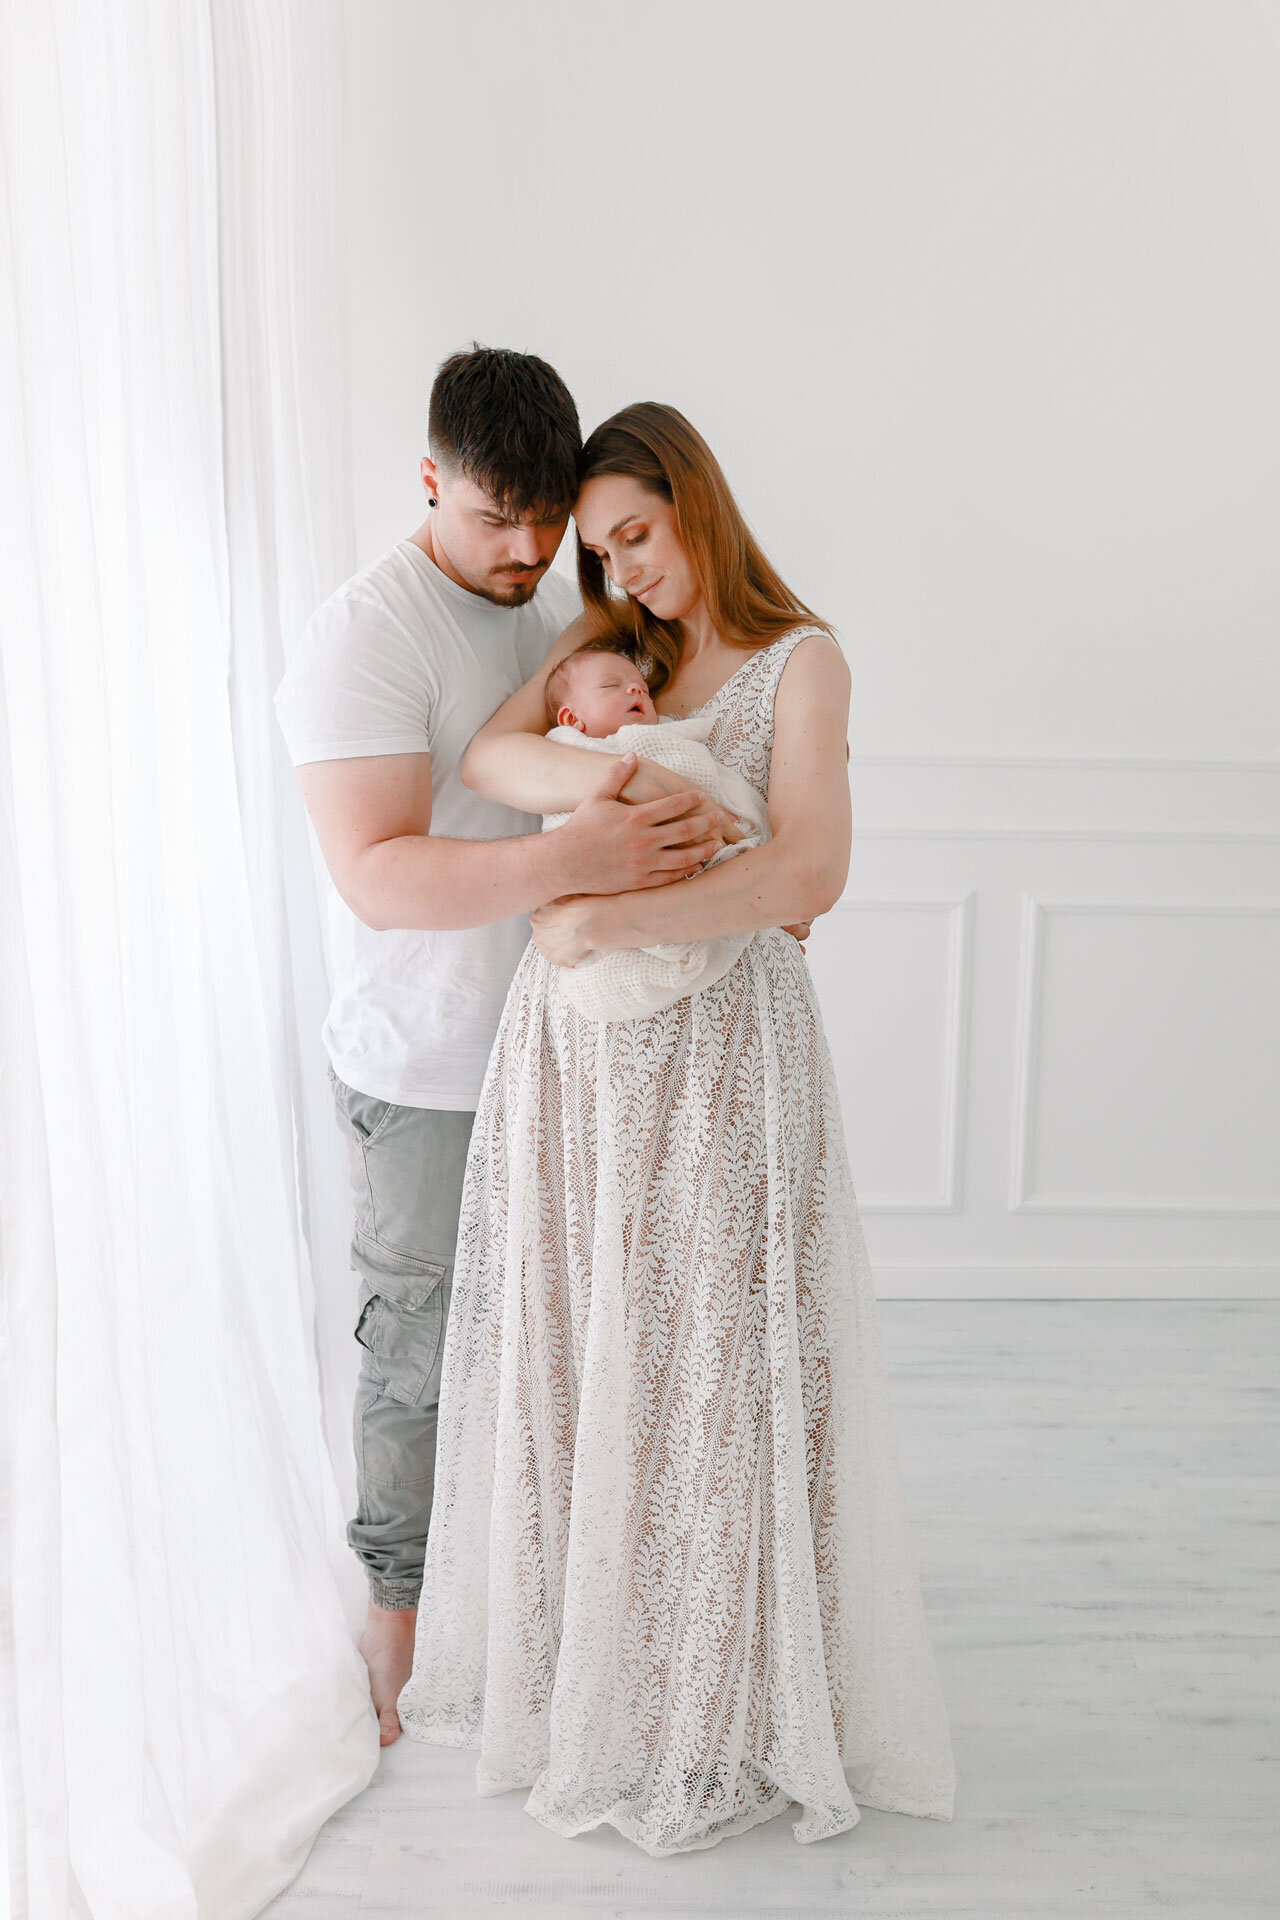 Familienfotografie in Bielefeld von Mama in langem weißen Kleid und Papa die ihr Neugeborenes im Arm halten.